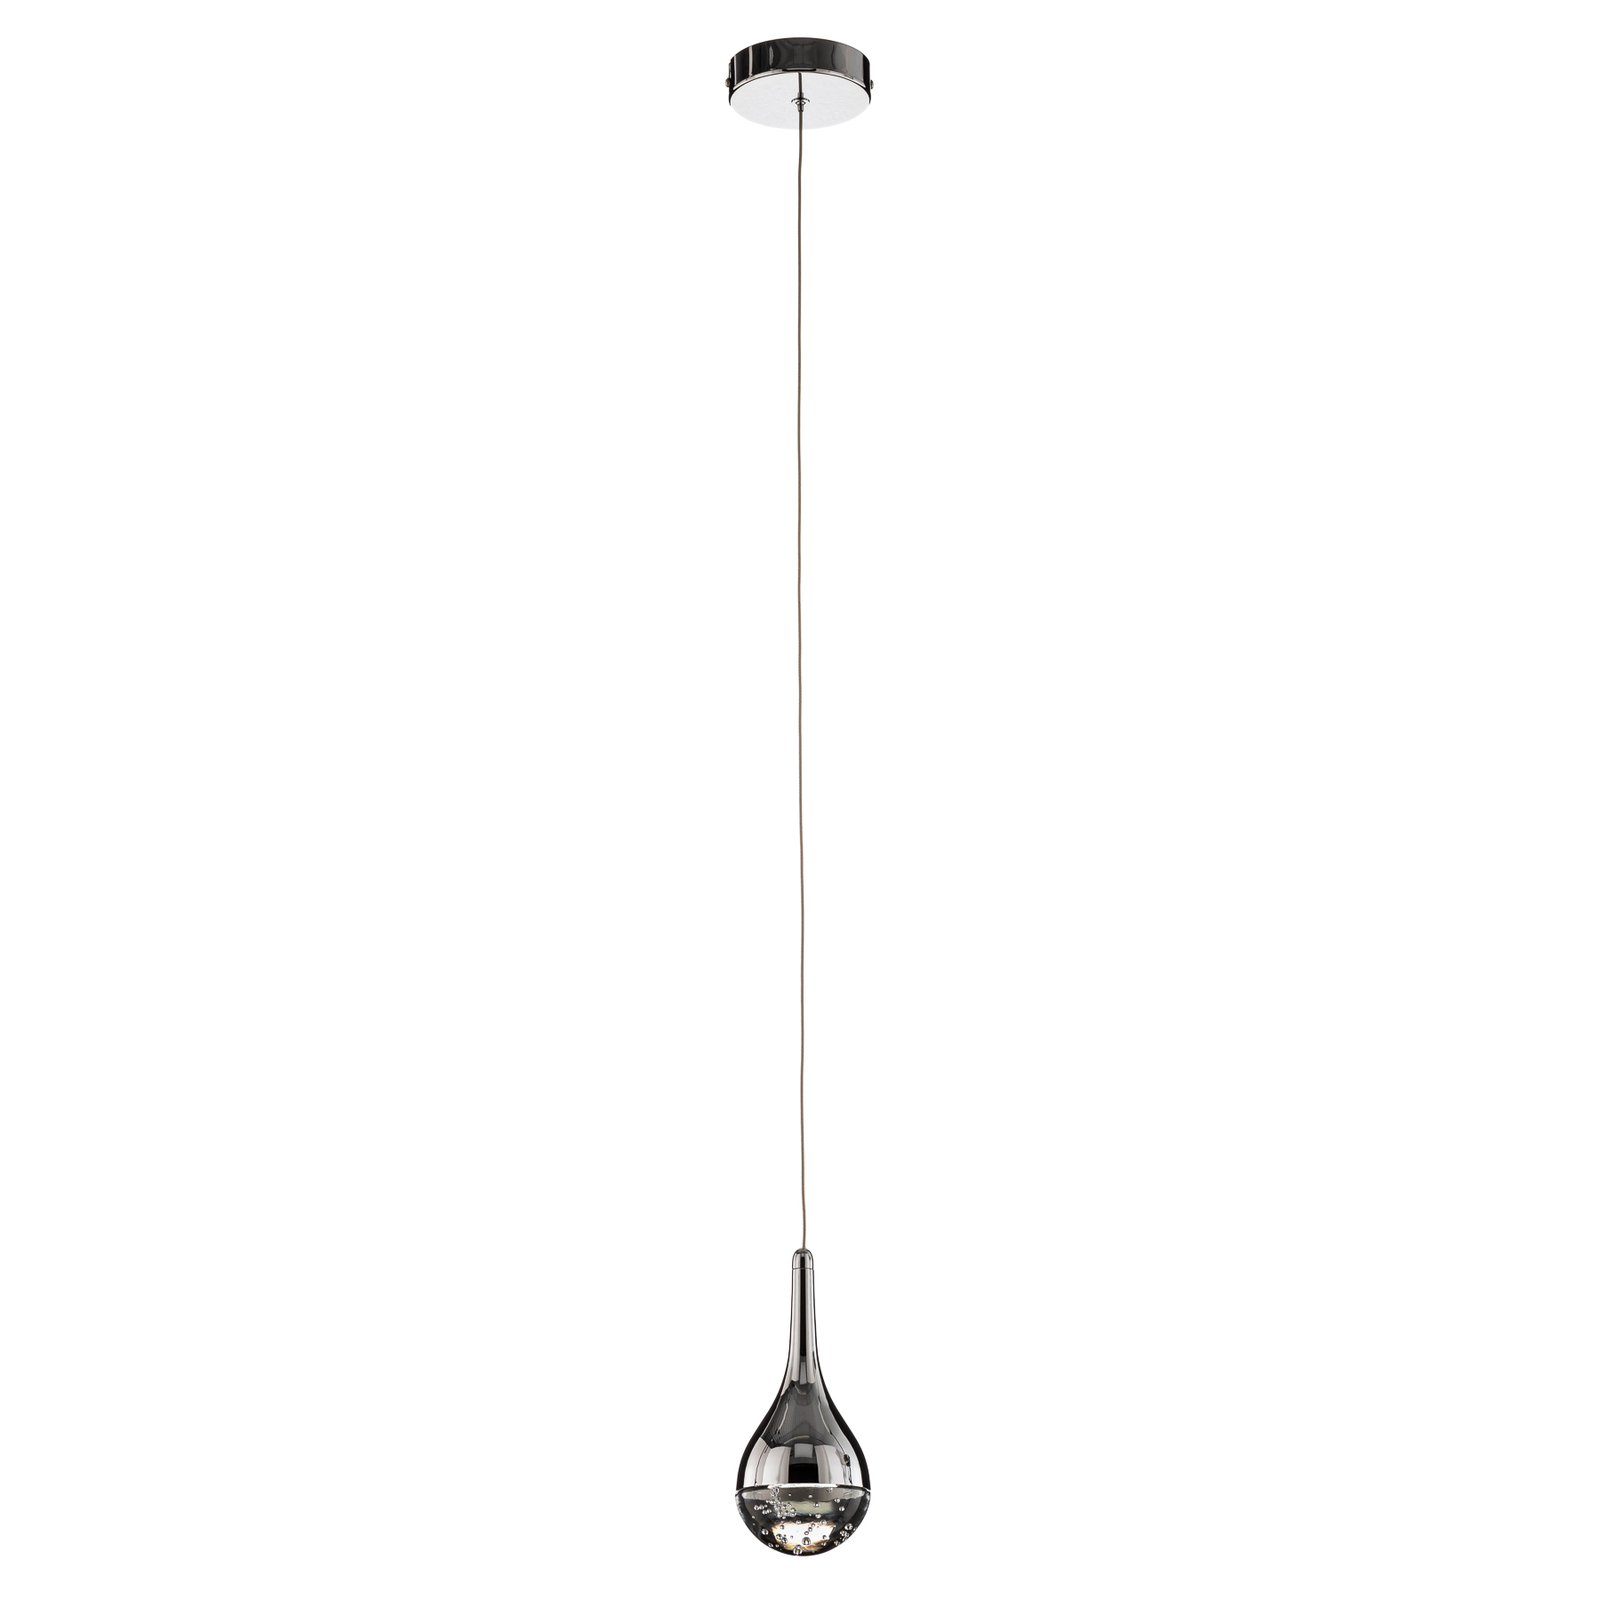 Elie LED hanging light, one-bulb